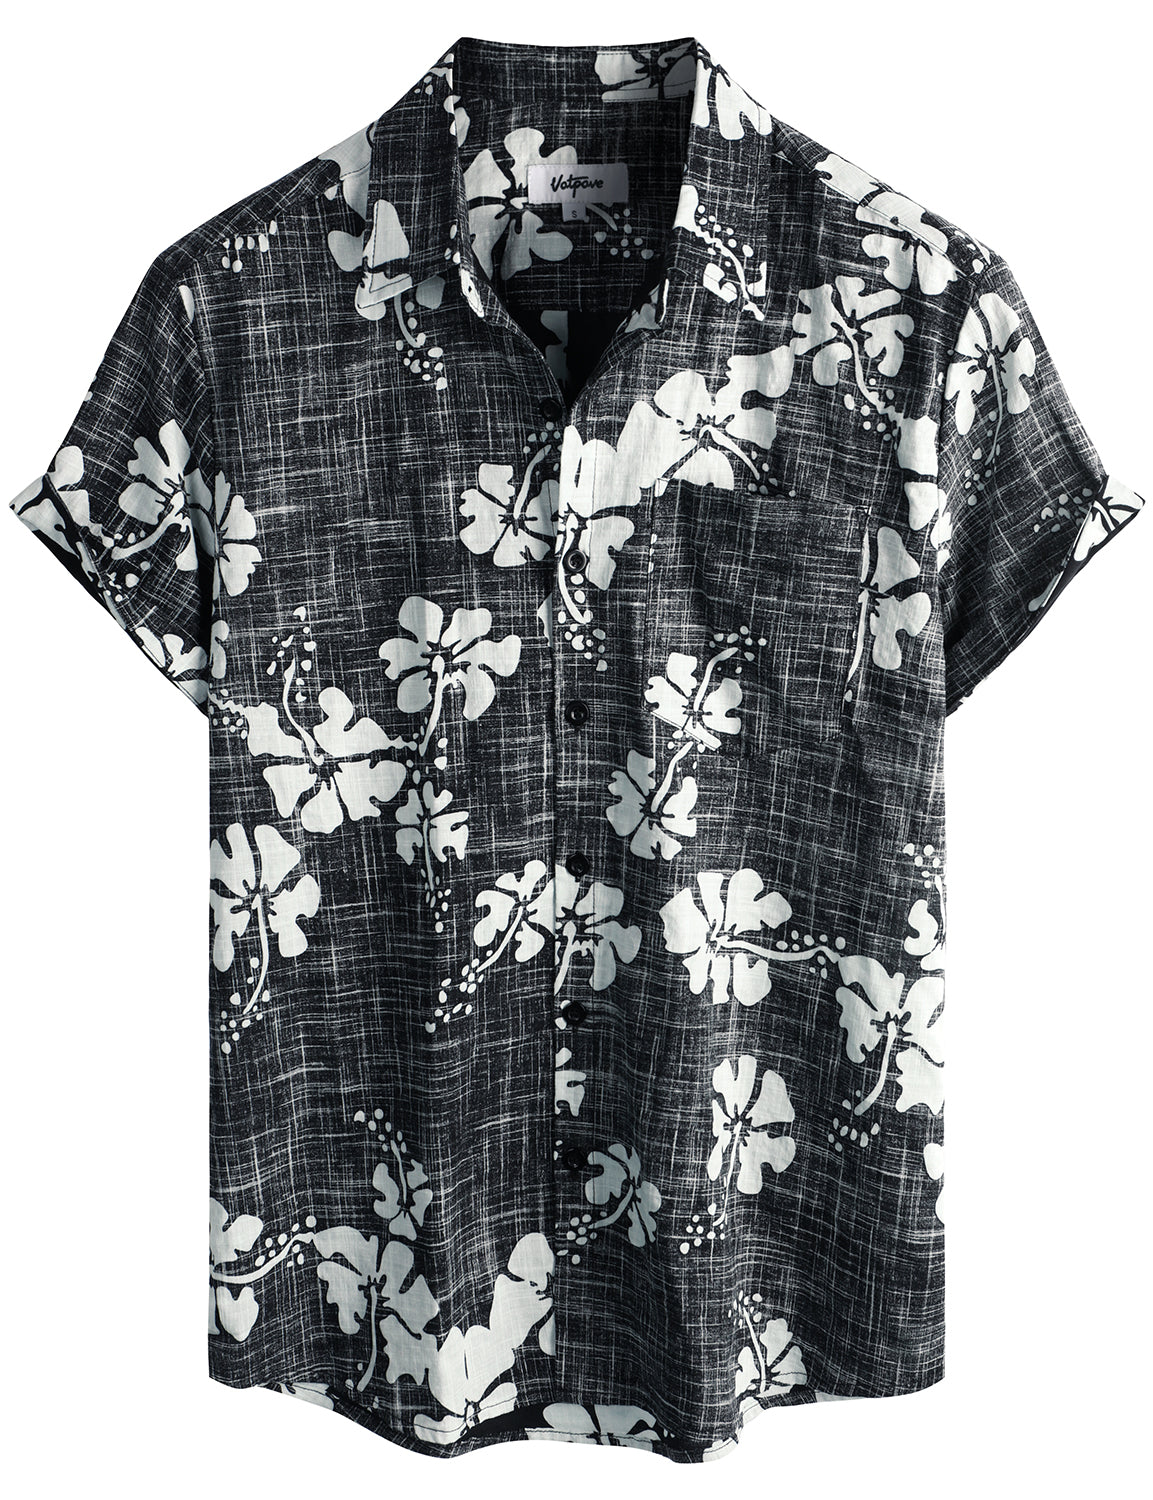 VATPAVE Mens Hawaiian Shirts Casual Short Sleeve Button Down Shirts